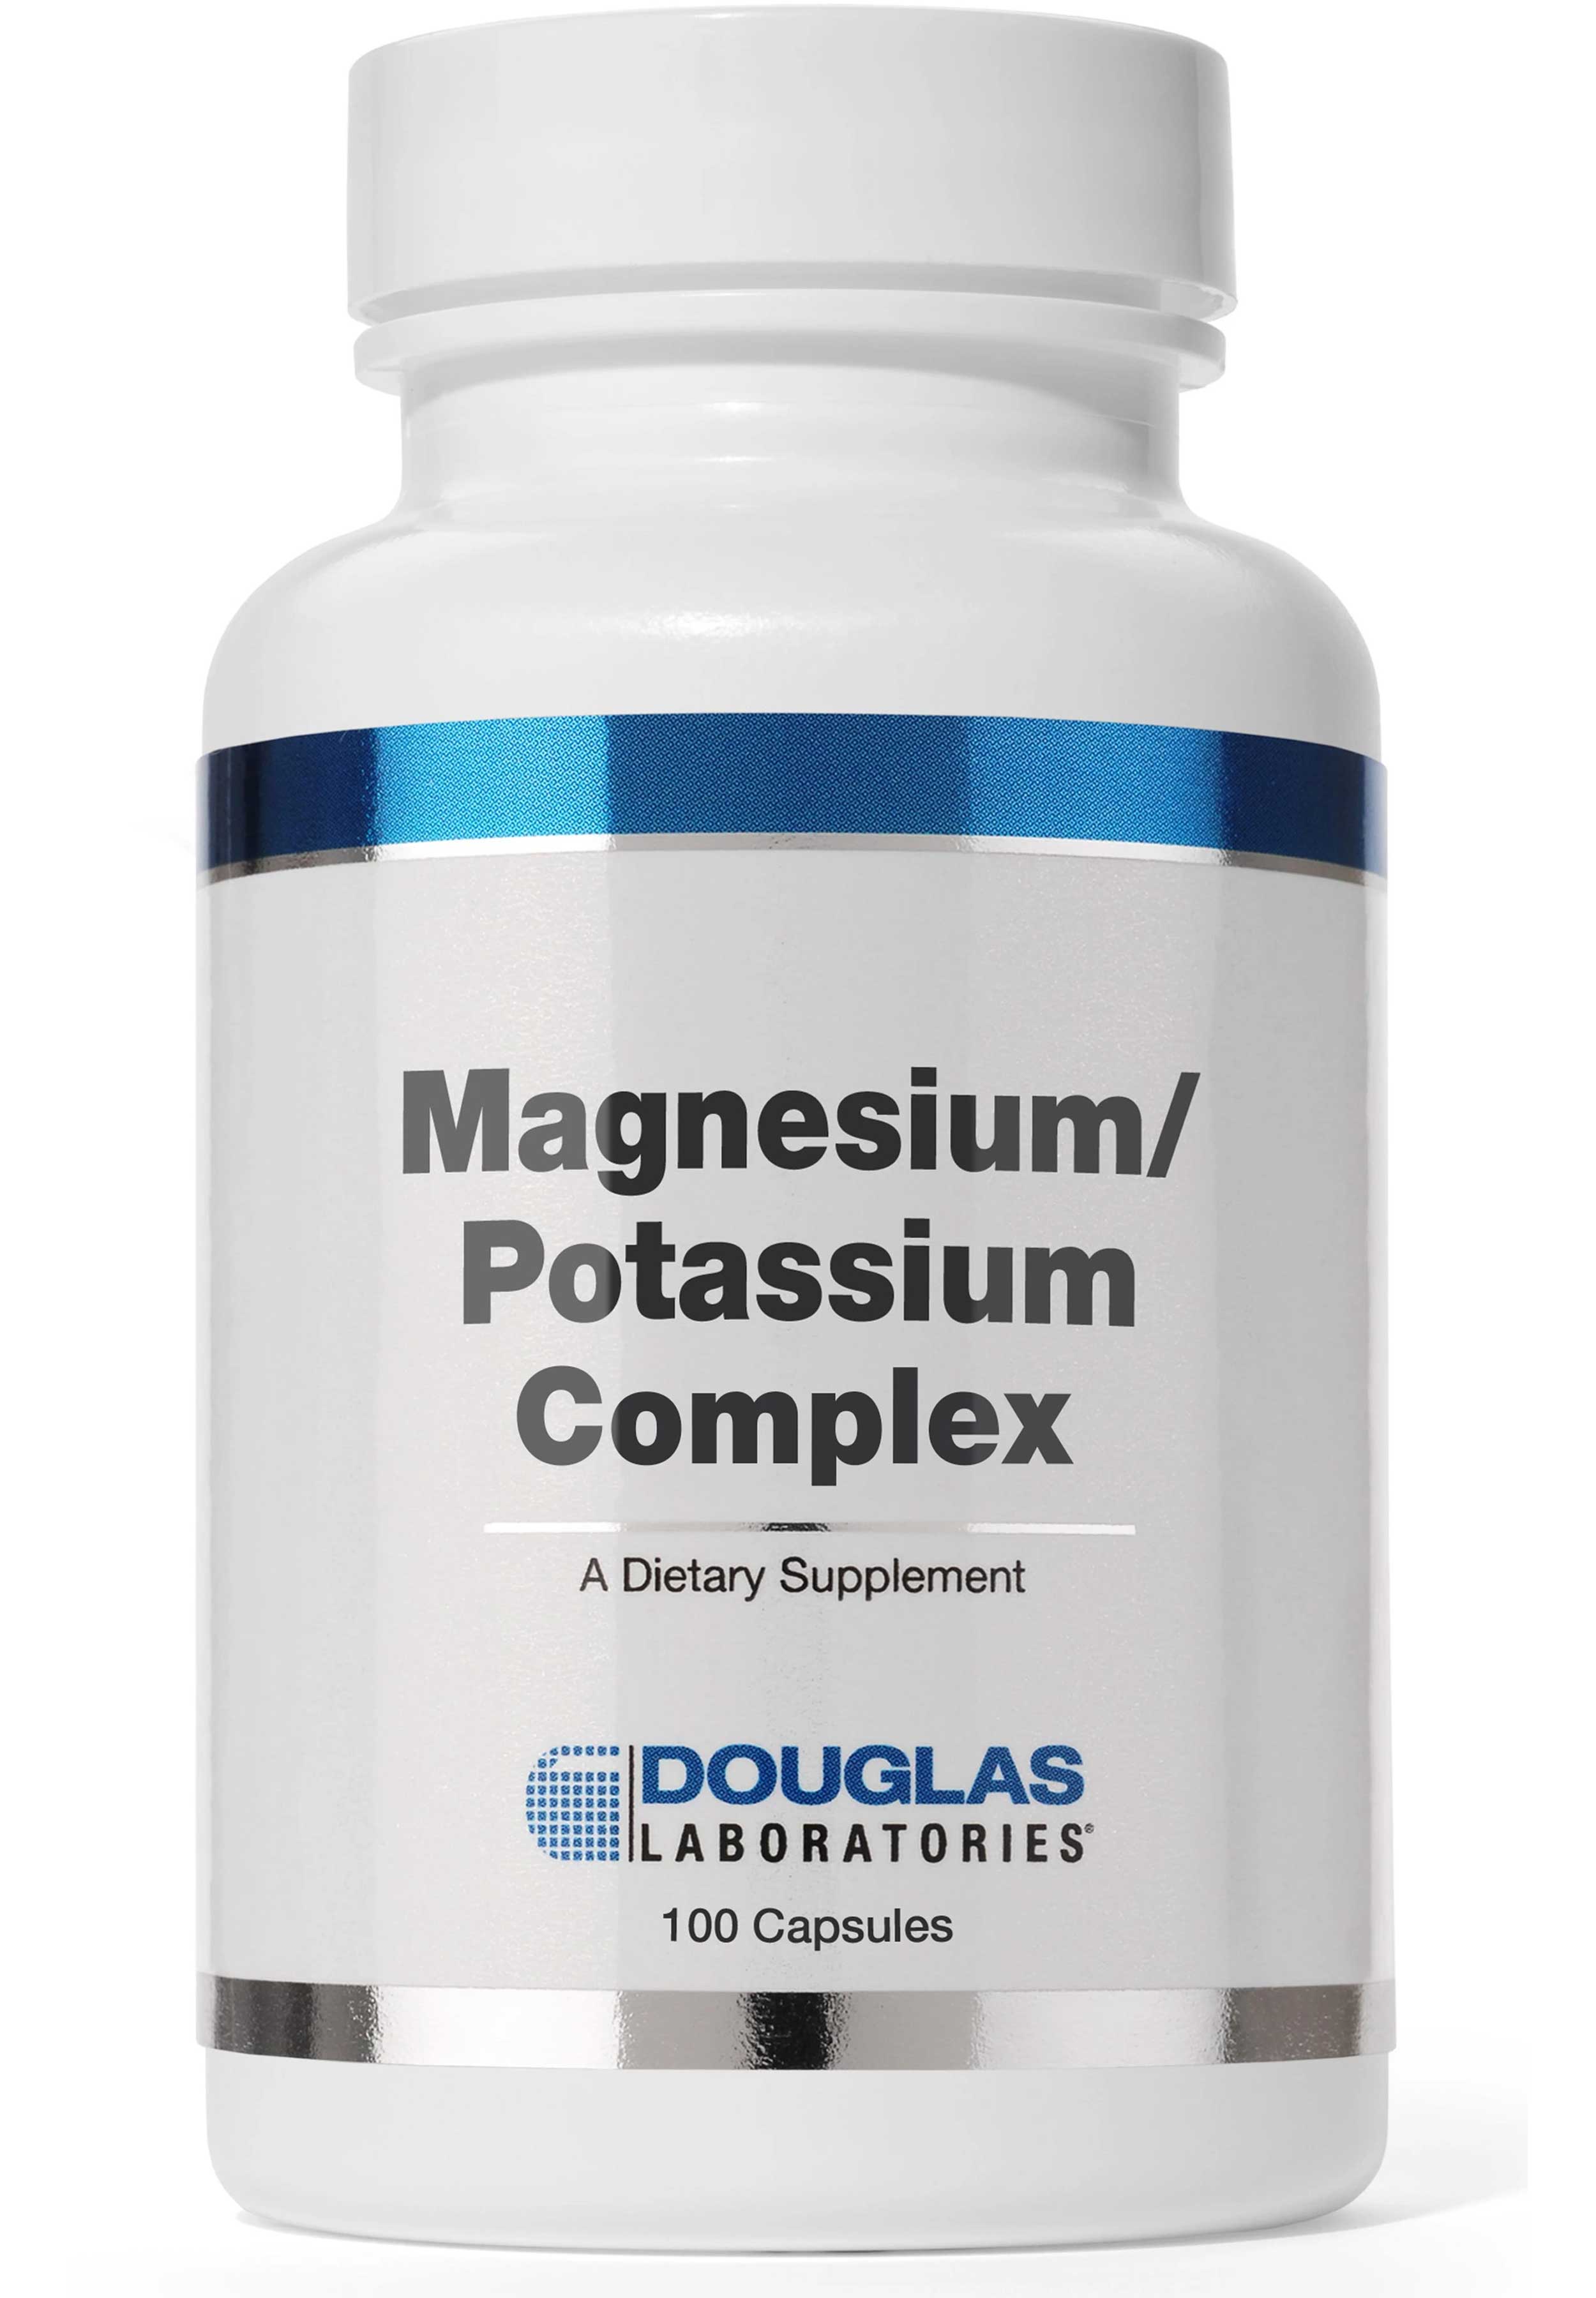 Douglas Laboratories Magnesium Potassium Aspartate (Formerly Magnesium / Potassium Complex)